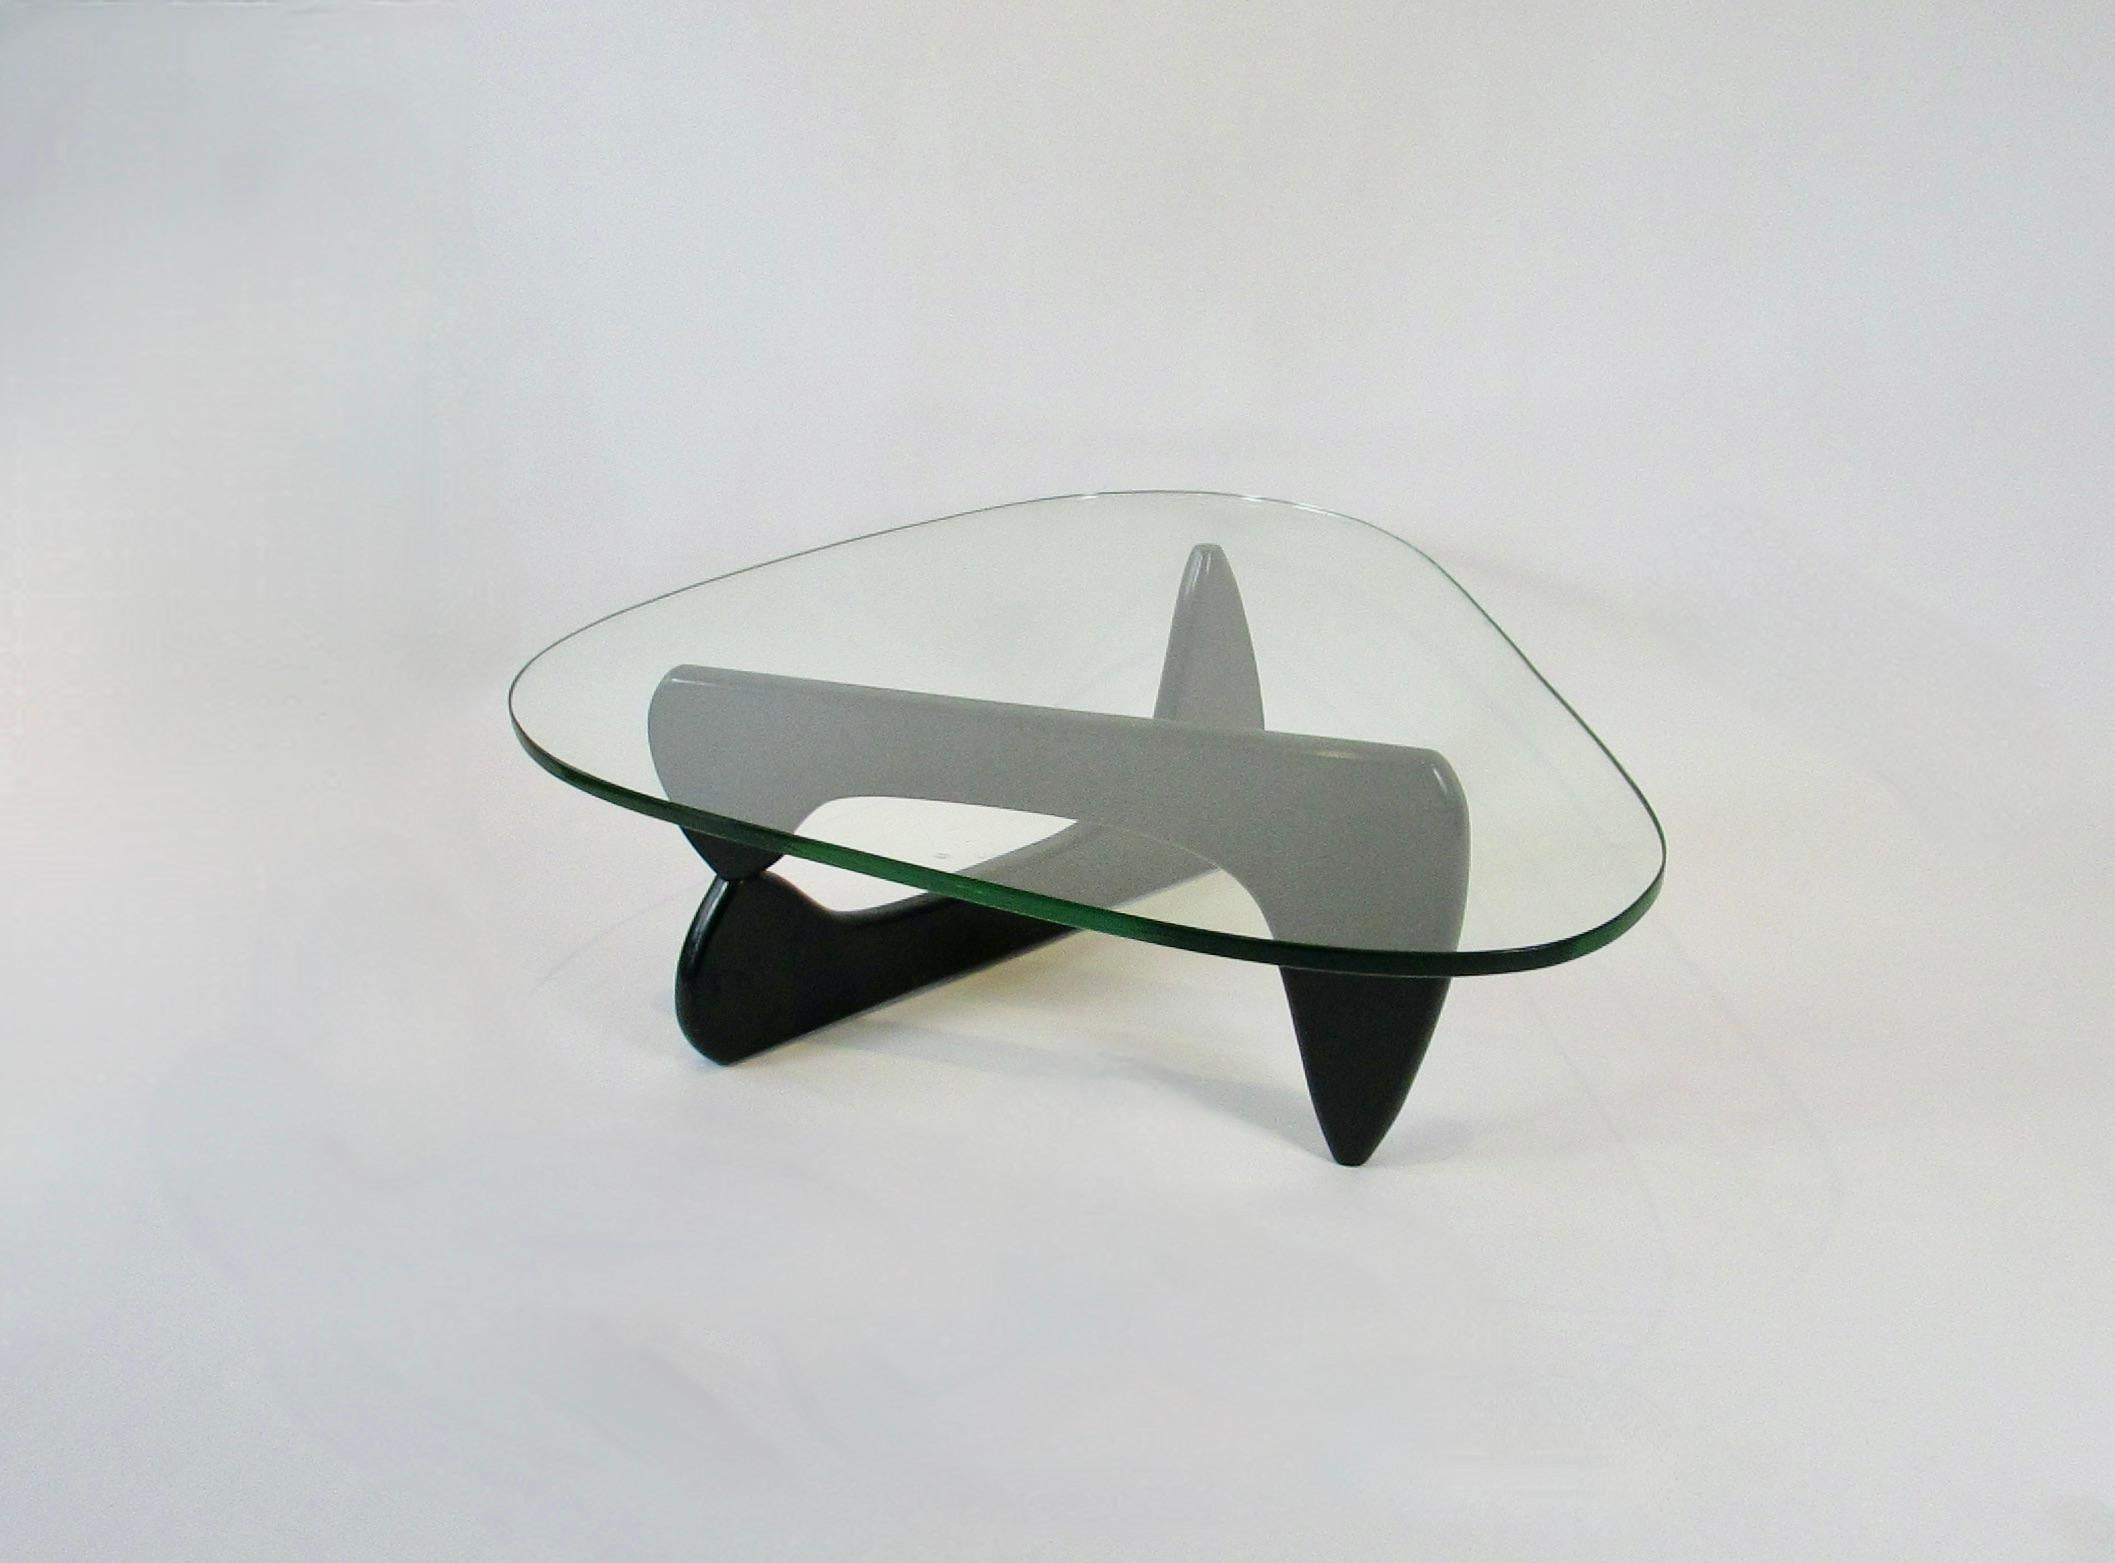 Couchtisch, entworfen von dem amerikanischen Designer Isamu Noguchi (1904-1988) für Herman Miller. Dieser ikonische Tisch hat eine Basis aus zwei schwarz lackierten Massivholzskulpturen, die an einem versteckten Aluminiumstift aufgehängt sind. 3/4